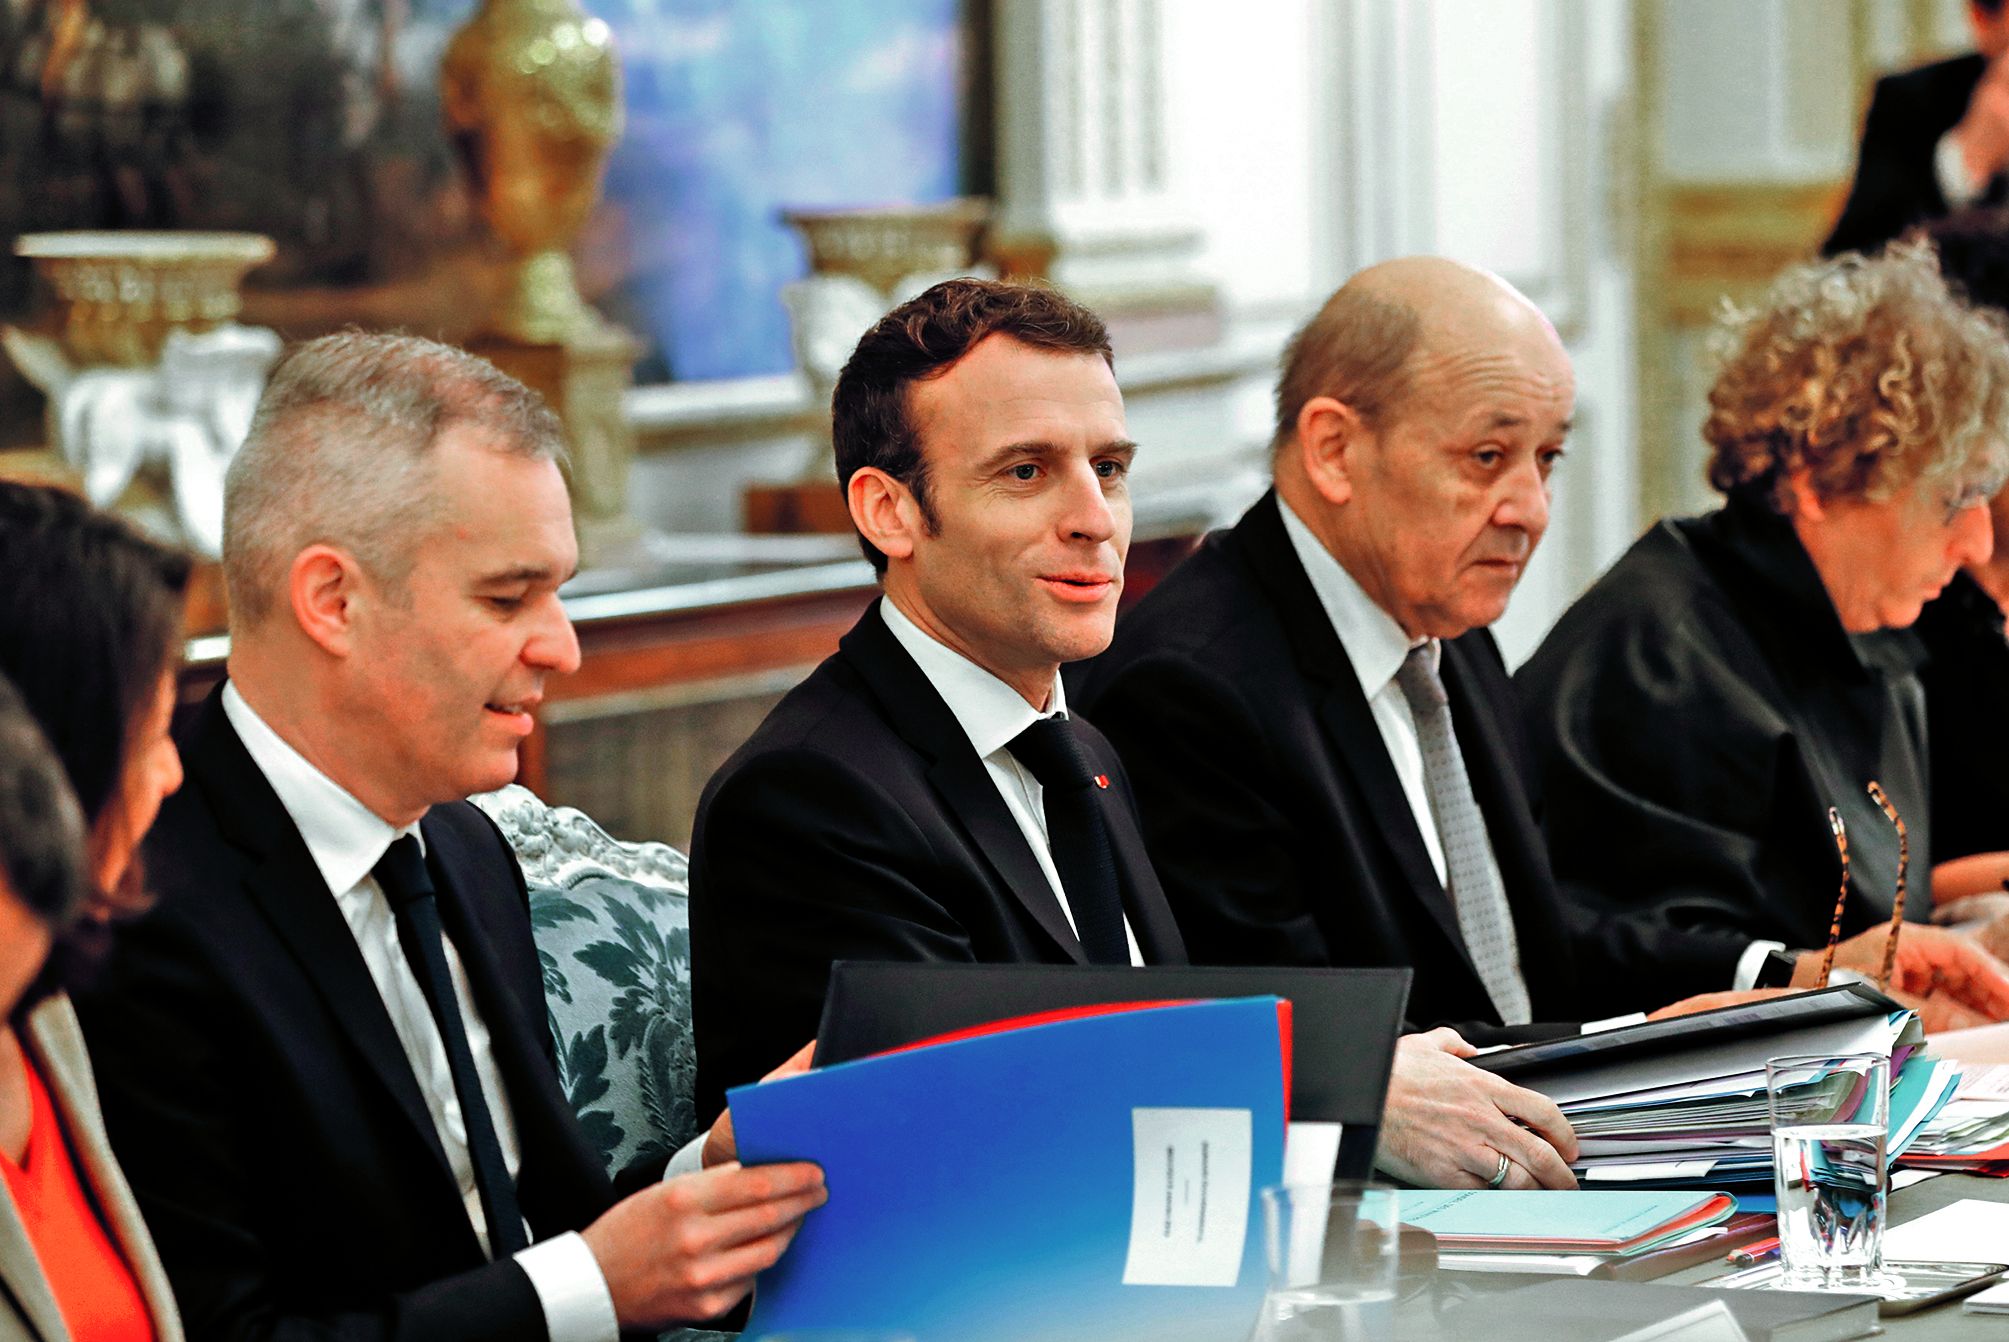 Avec 15 140 euros brut par mois, Emmanuel Macron n’est pas  le mieux payé, comparé aux 37 580 euros du gouverneur  de la Banque de France.Photo AFP